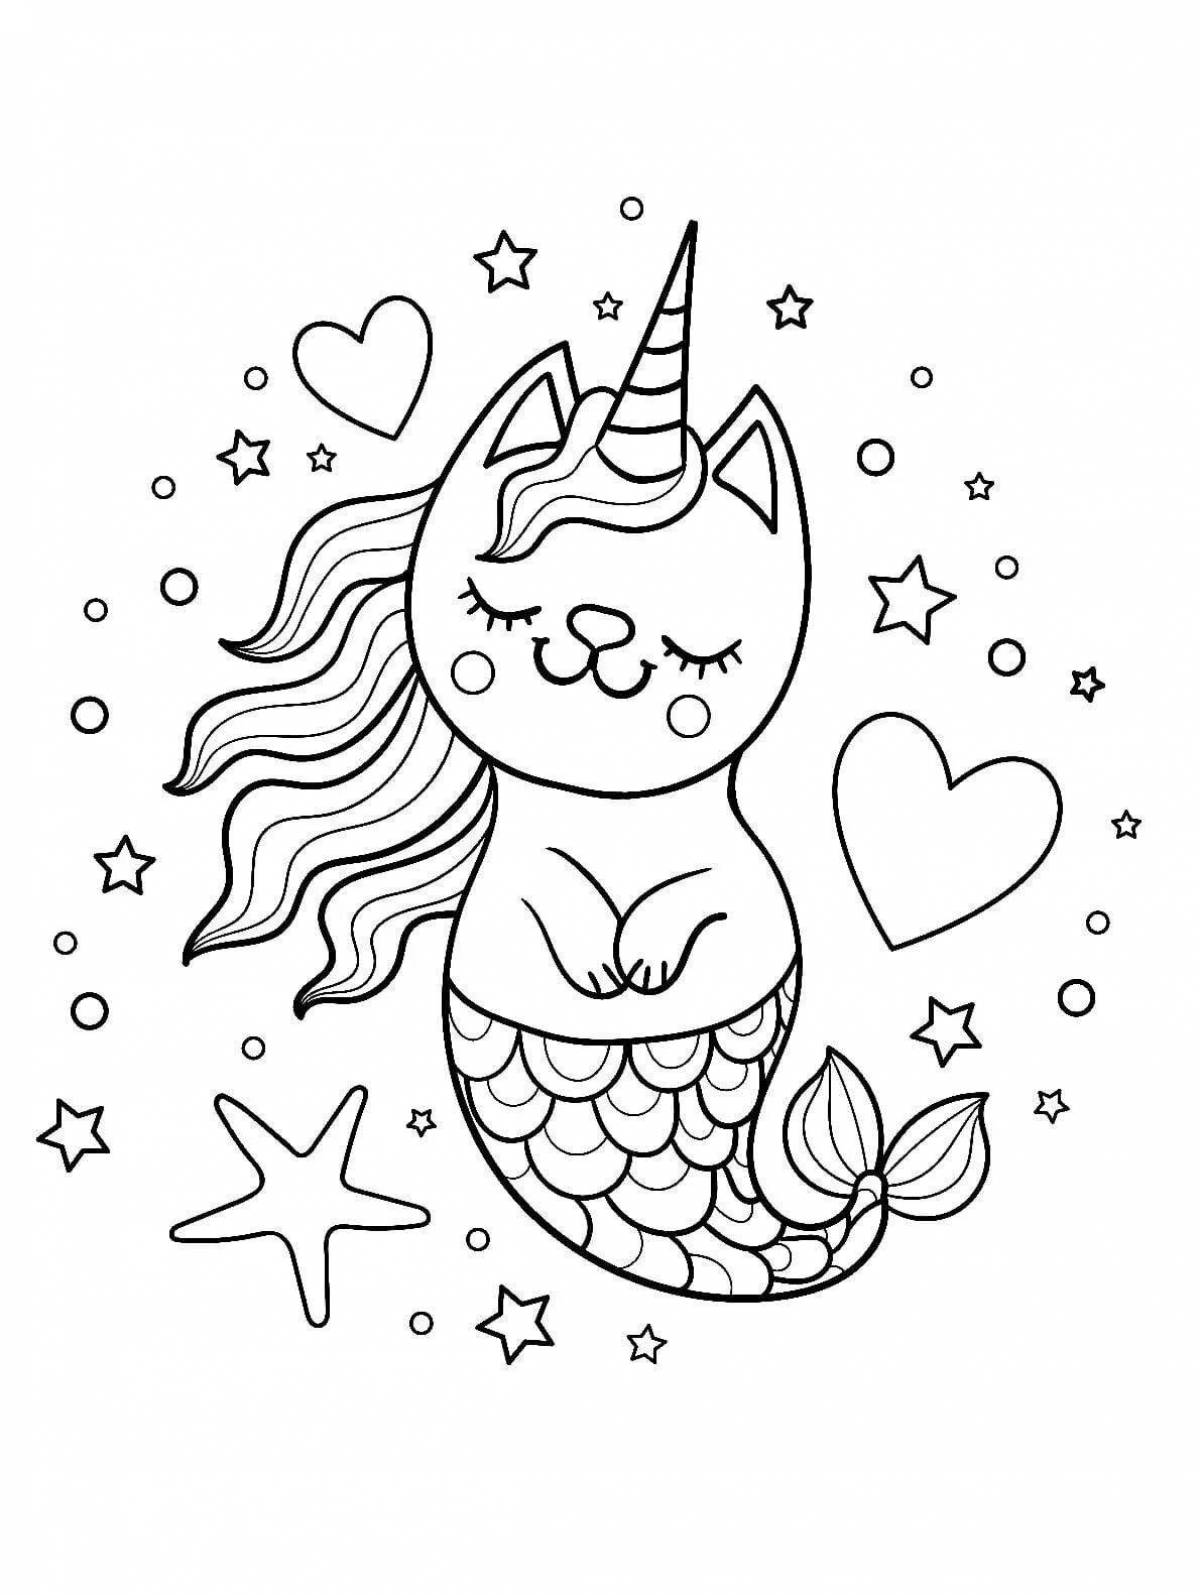 Royal coloring cat mermaid